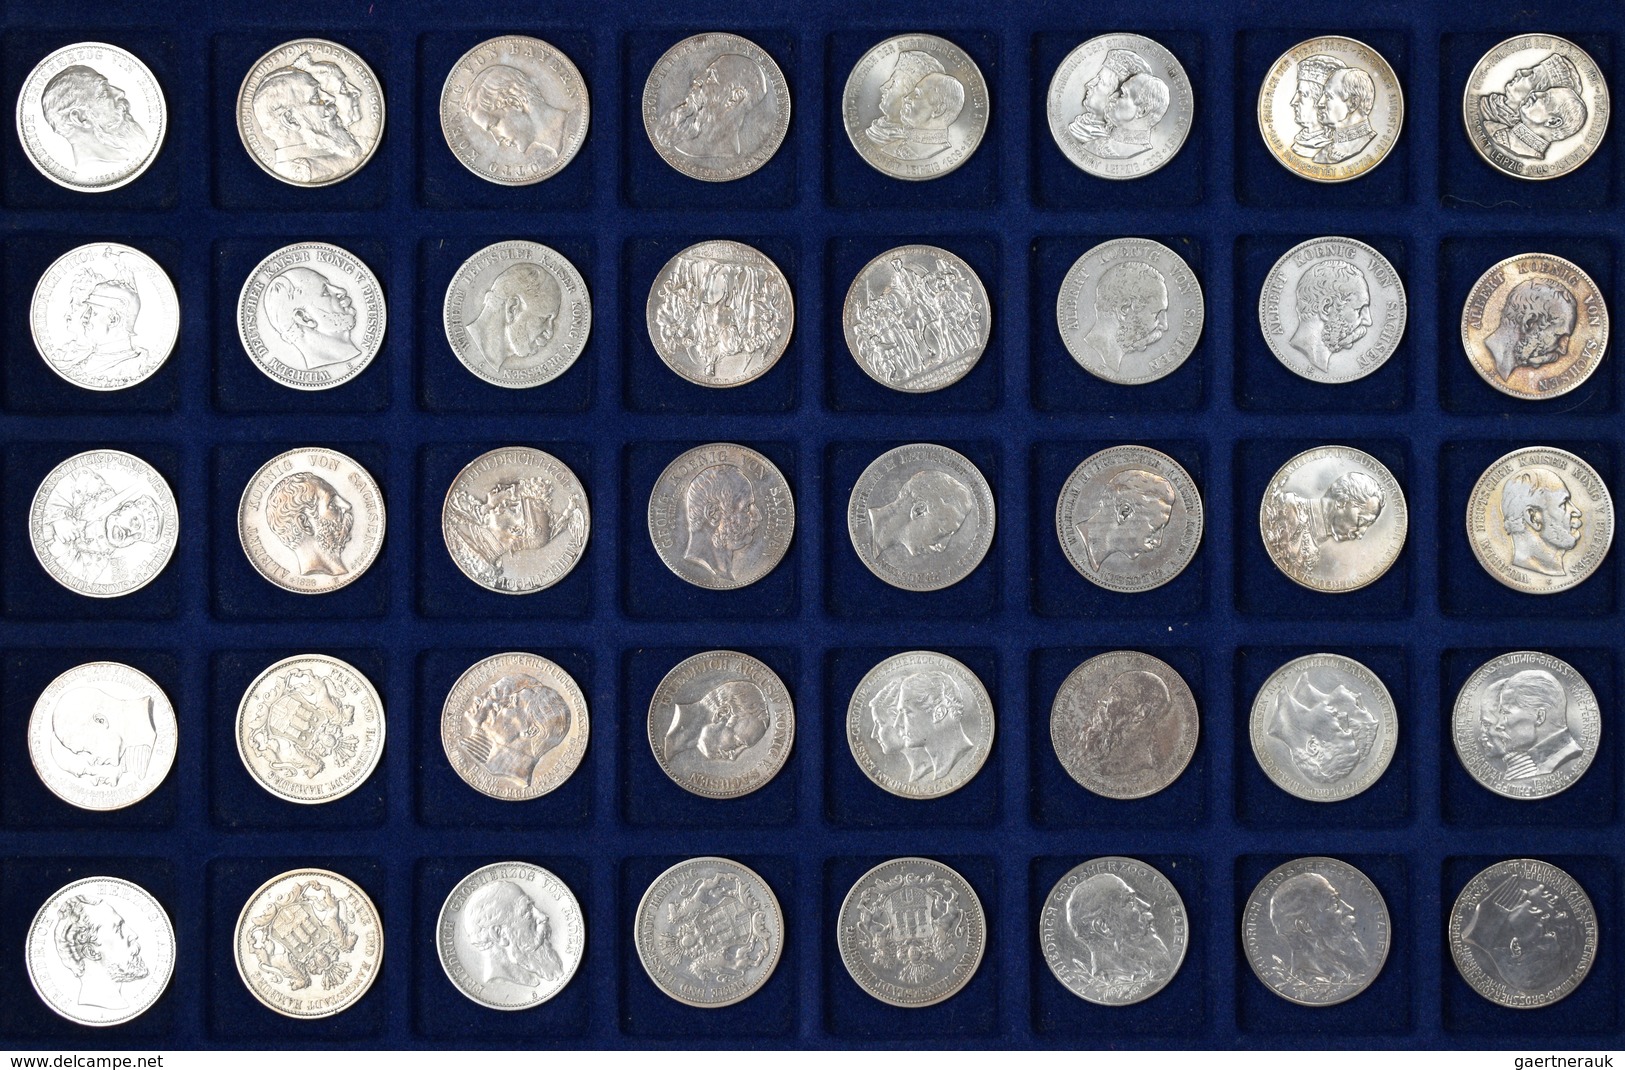 Umlaufmünzen 2 Mark bis 5 Mark: Eine auf zwei Münzkoffer verteilte bemerkenswerte Sammlung von insge